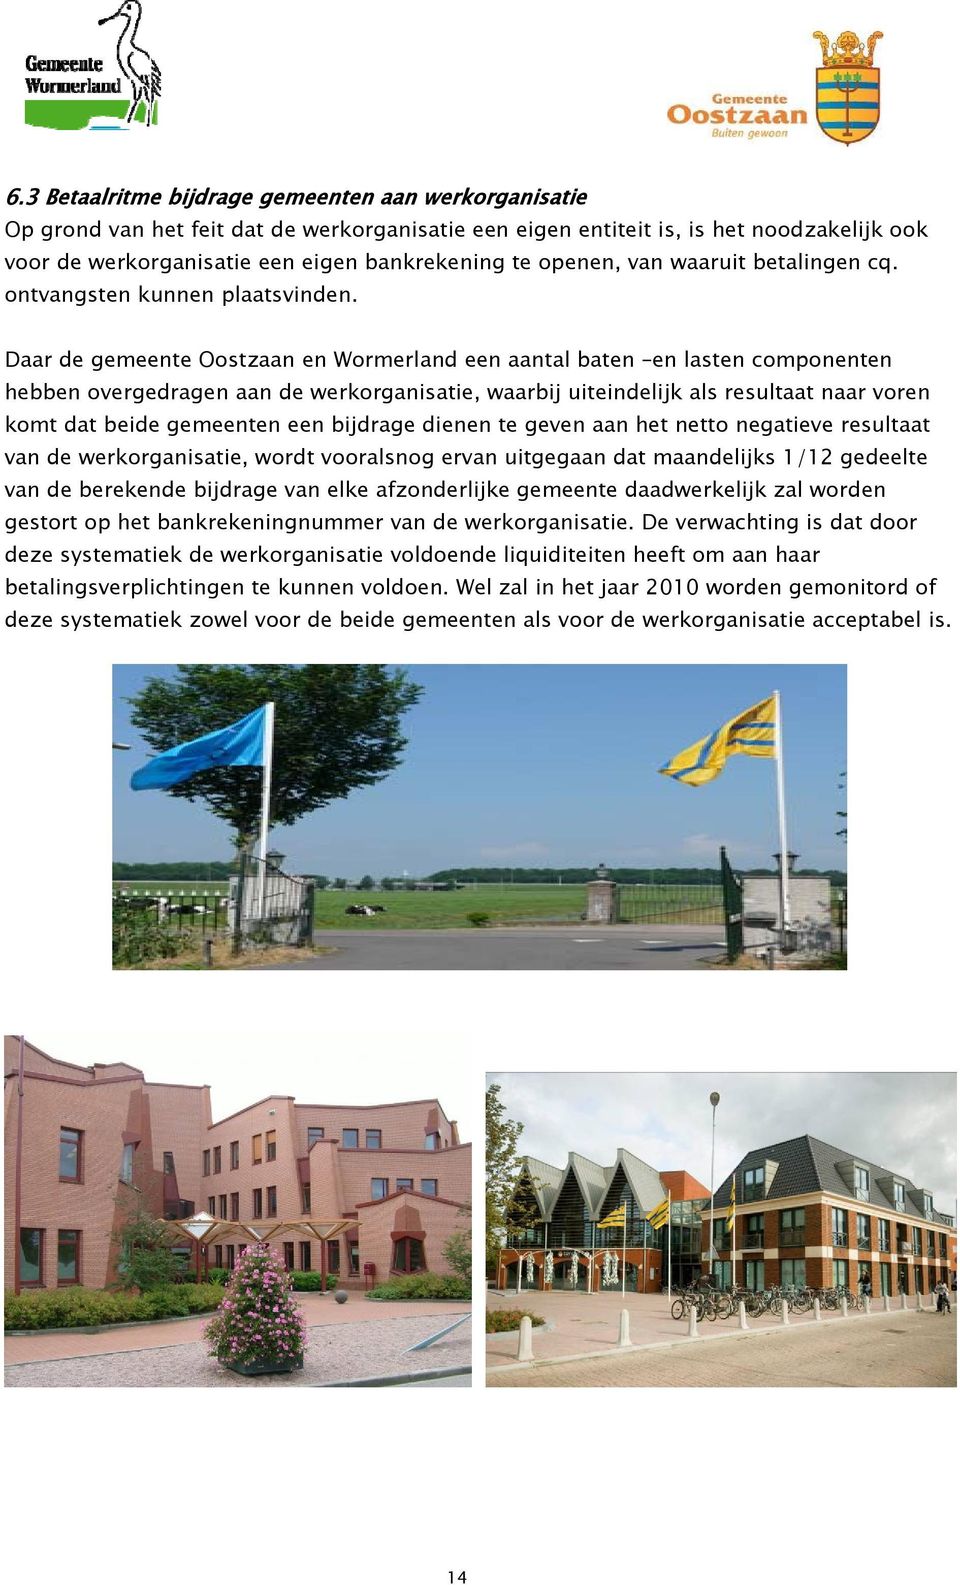 Daar de gemeente Oostzaan en Wormerland een aantal baten en lasten componenten hebben overgedragen aan de werkorganisatie, waarbij uiteindelijk als resultaat naar voren komt dat beide gemeenten een